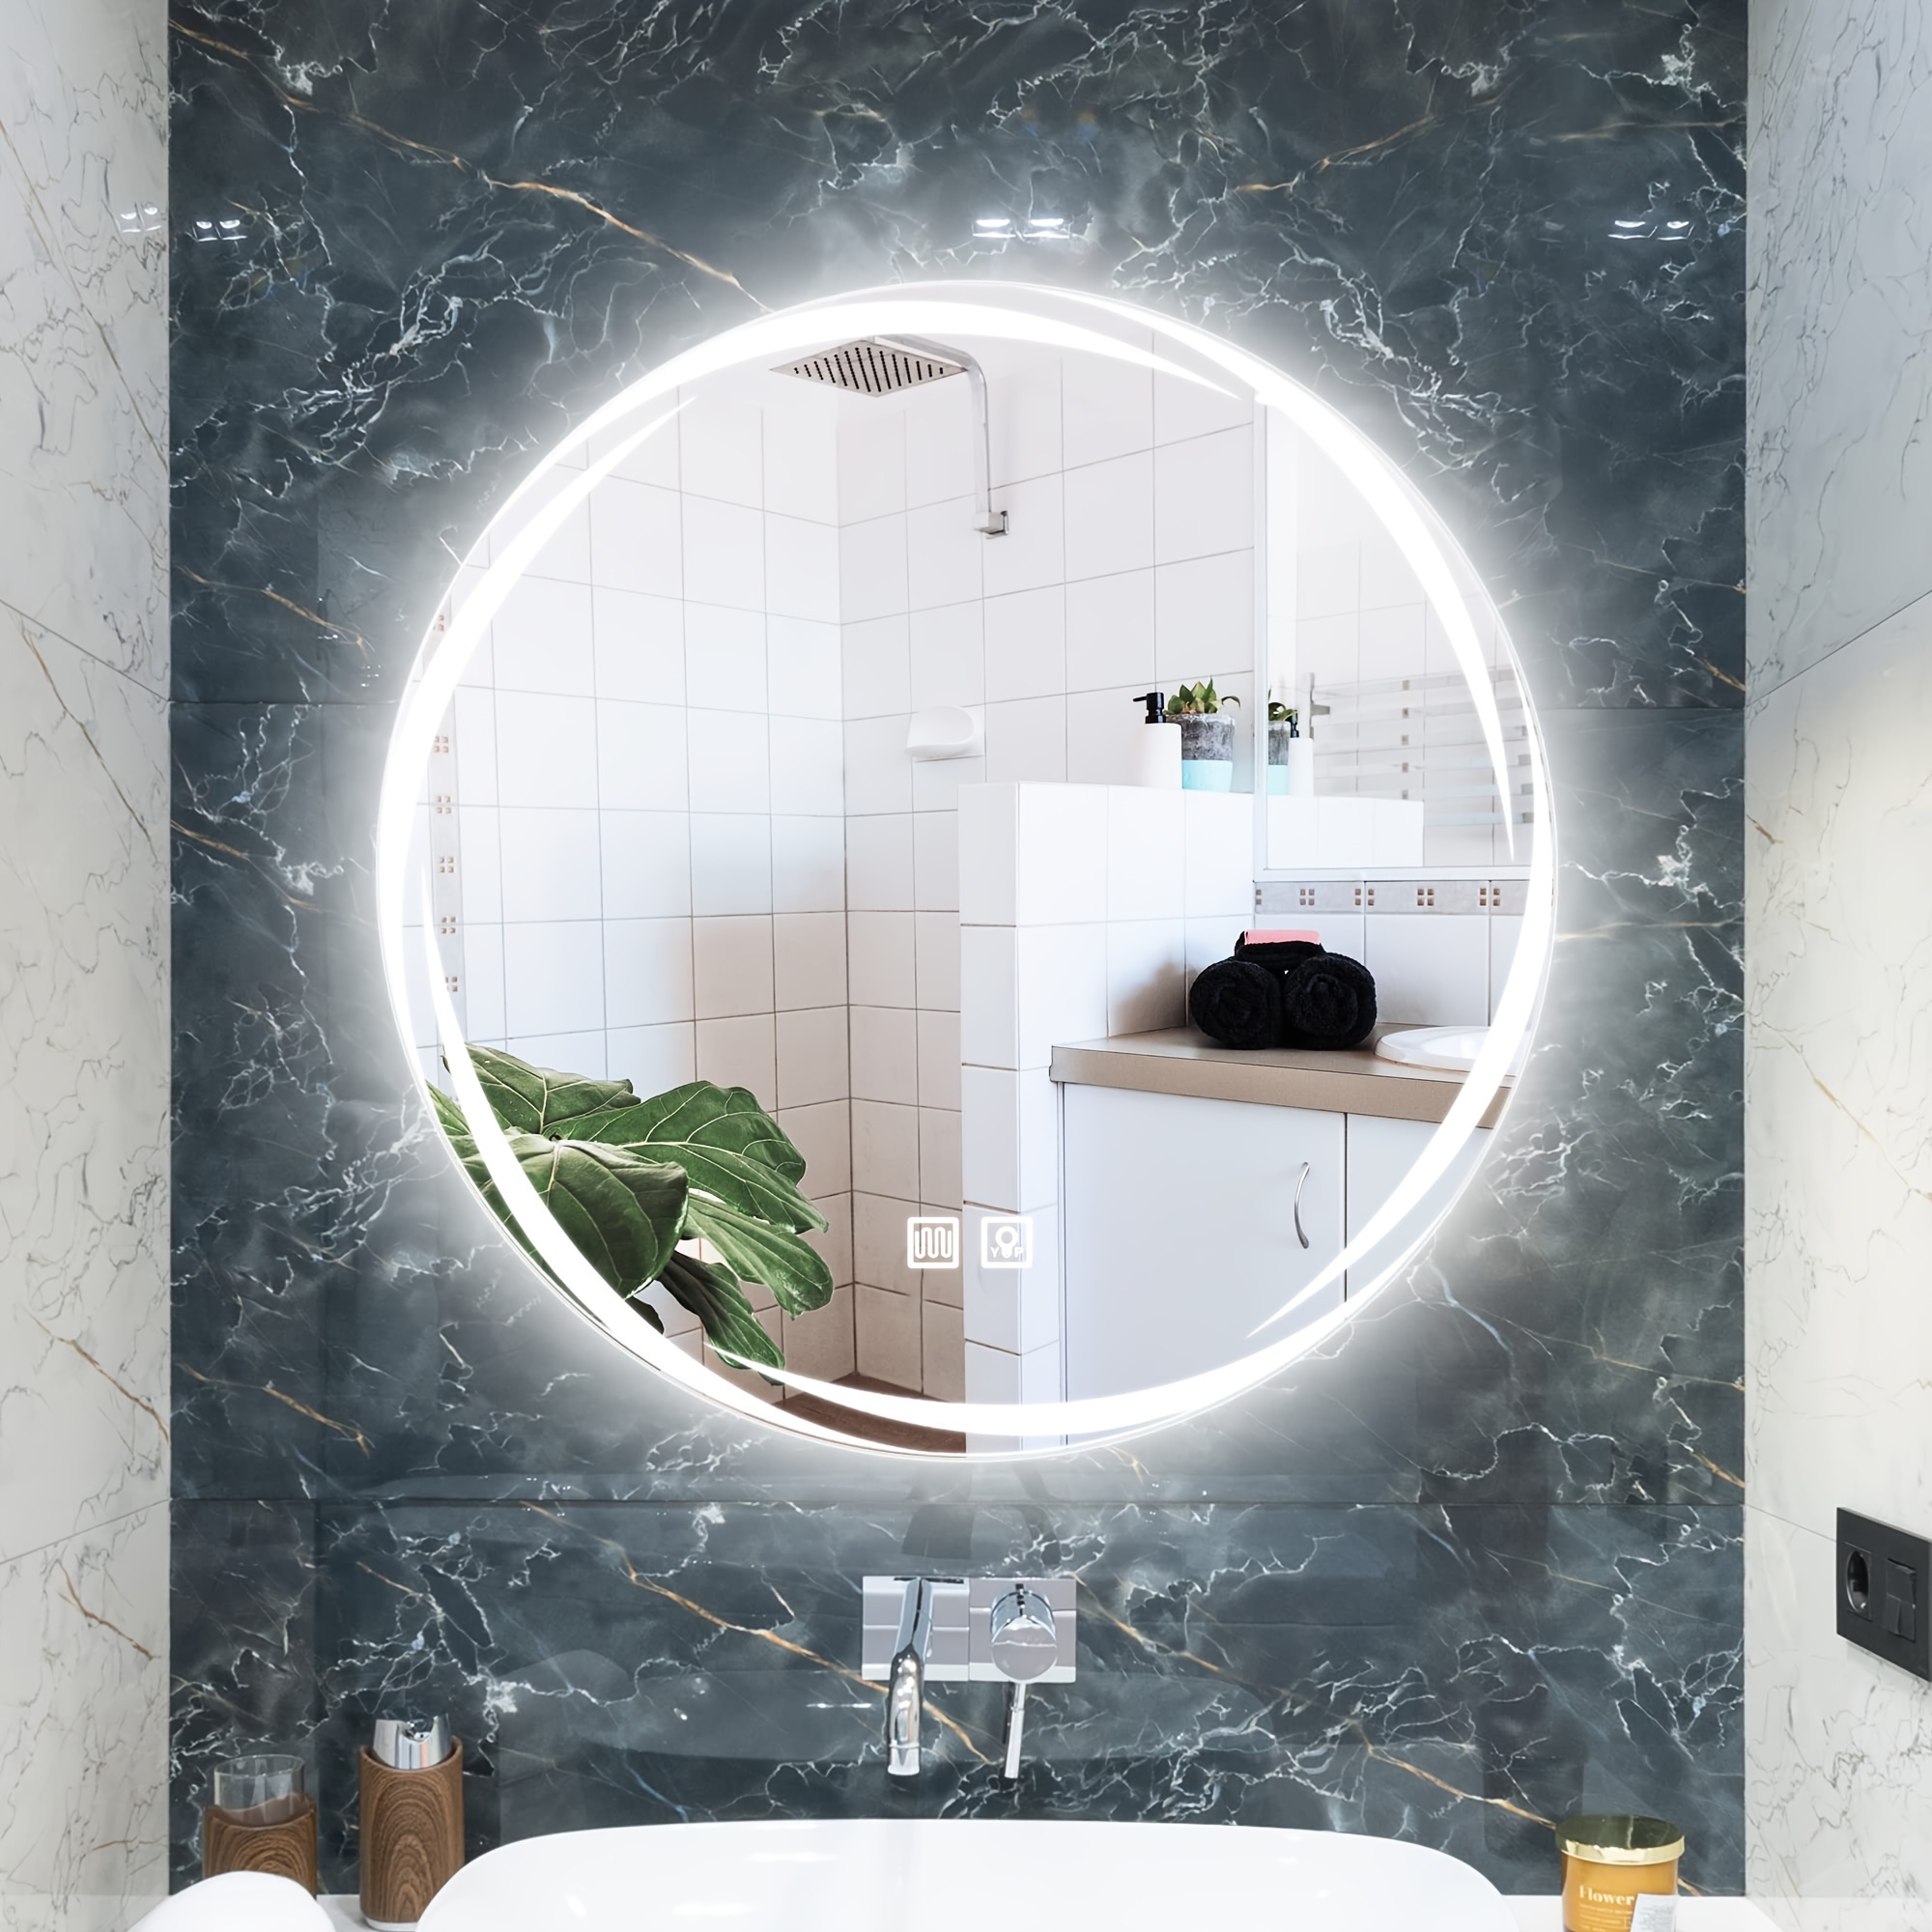  Espejo de tocador de baño con luces, espejo retroiluminado para  baño, espejo LED redondo montado en la pared, control táctil, inastillable  para dormitorio, entrada, sala de estar, decoración de pared (color